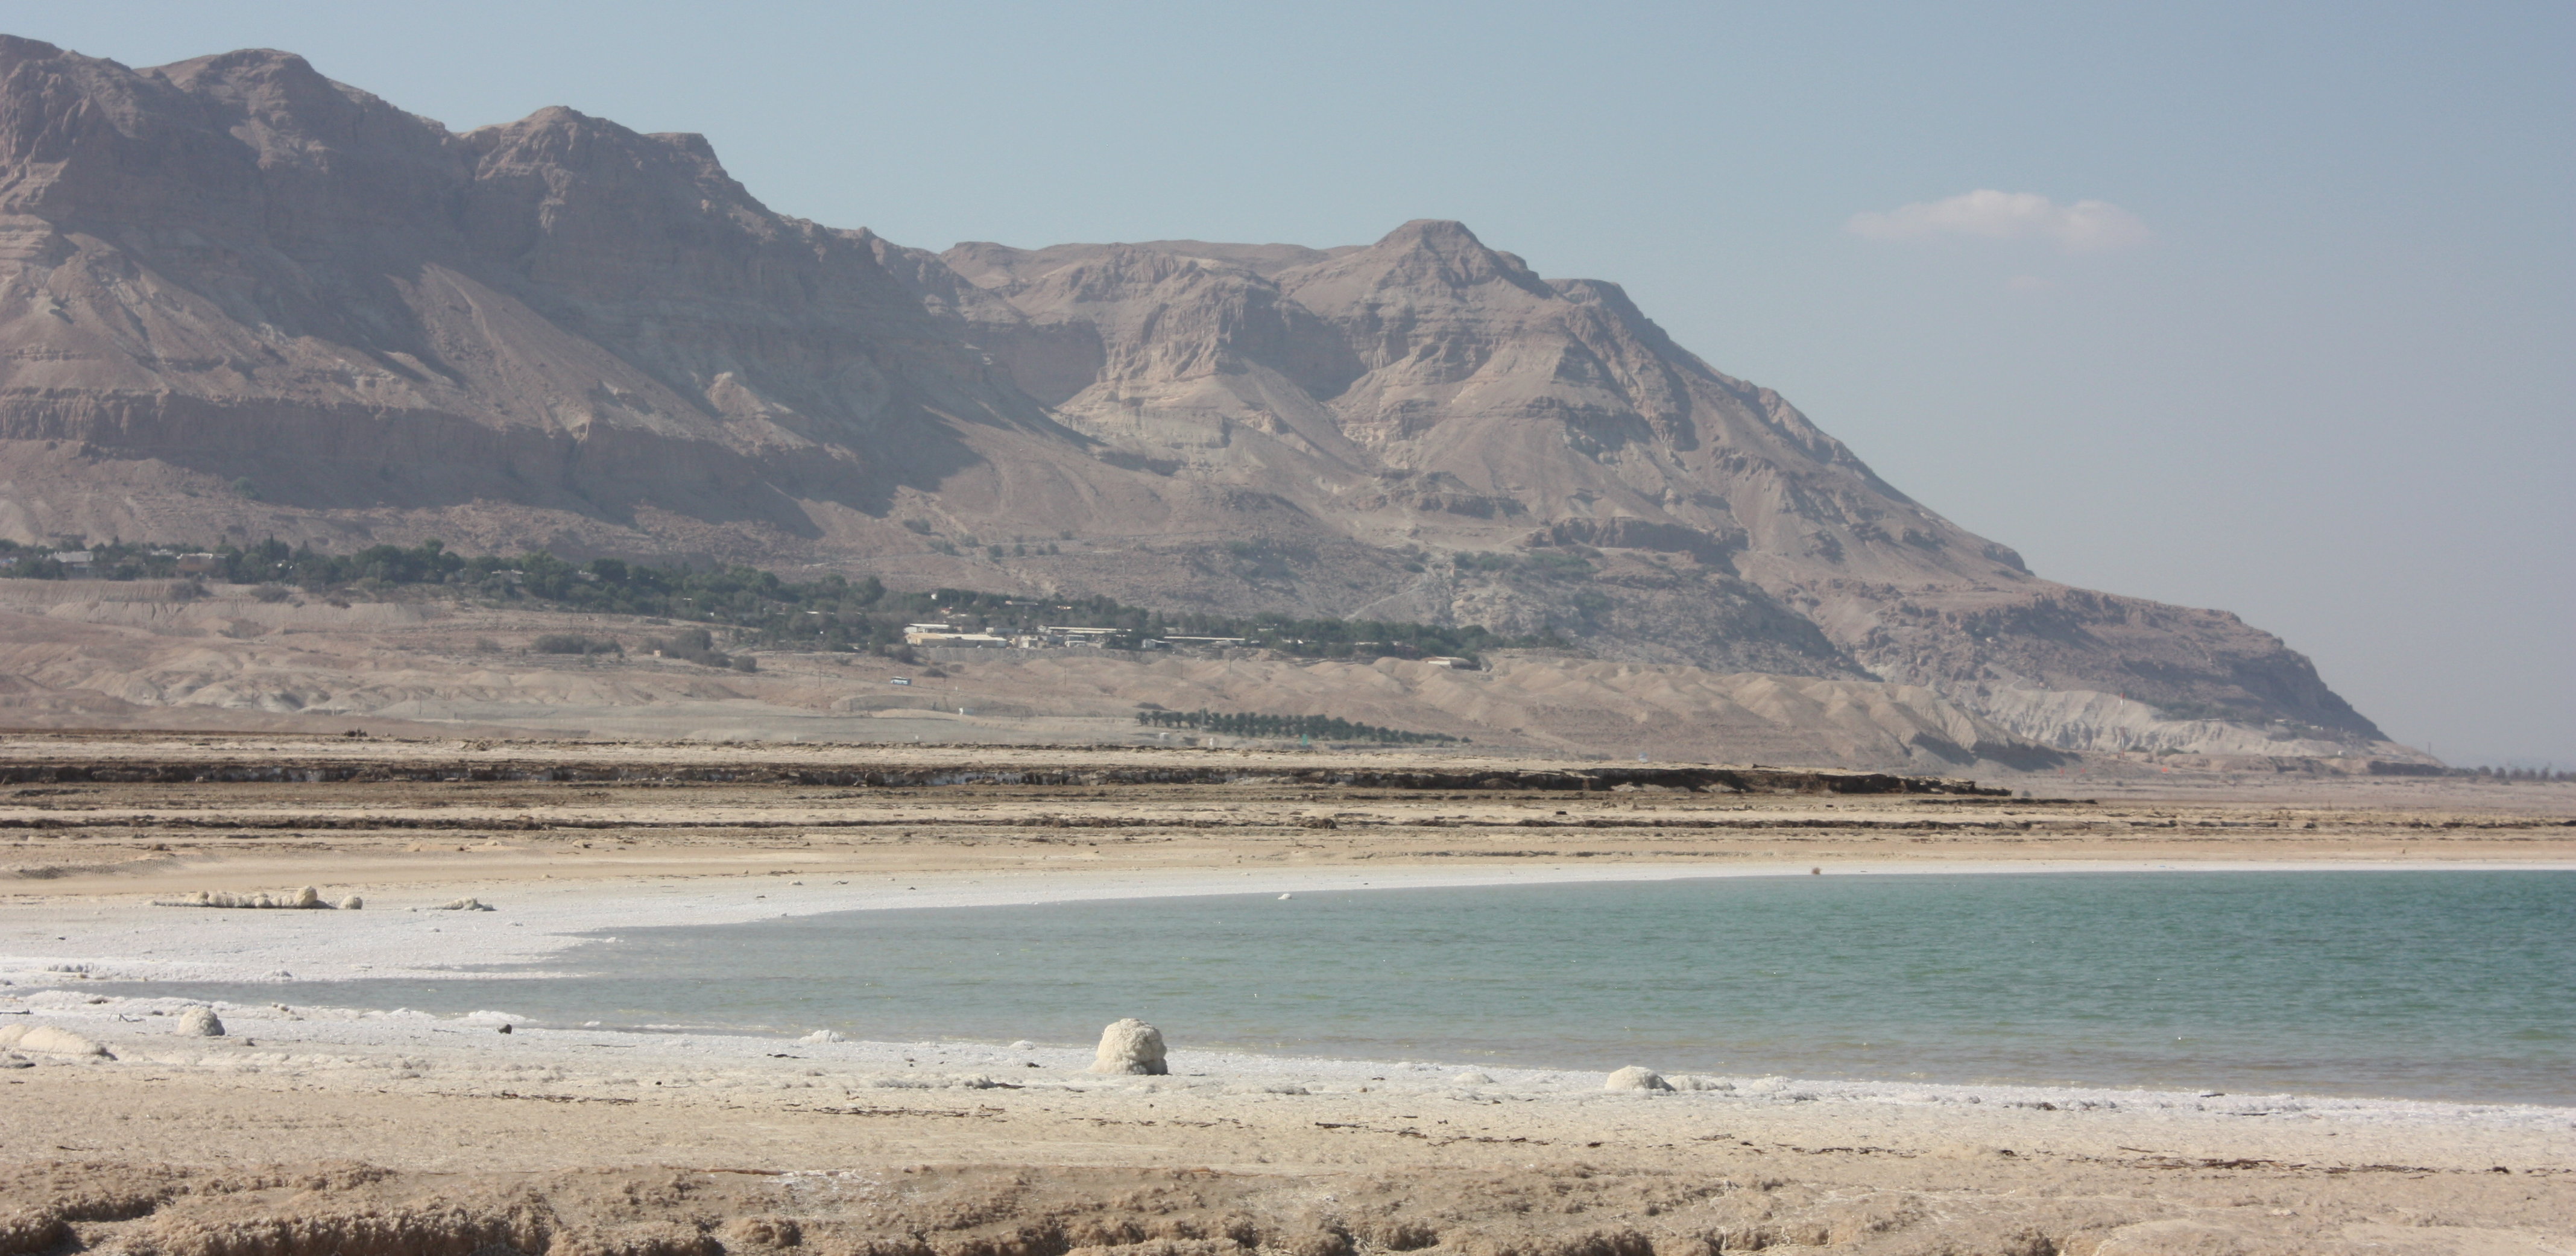 Ufer des Toten Meeres mit Blick auf En-Gedi und einer abfallenden Klippe